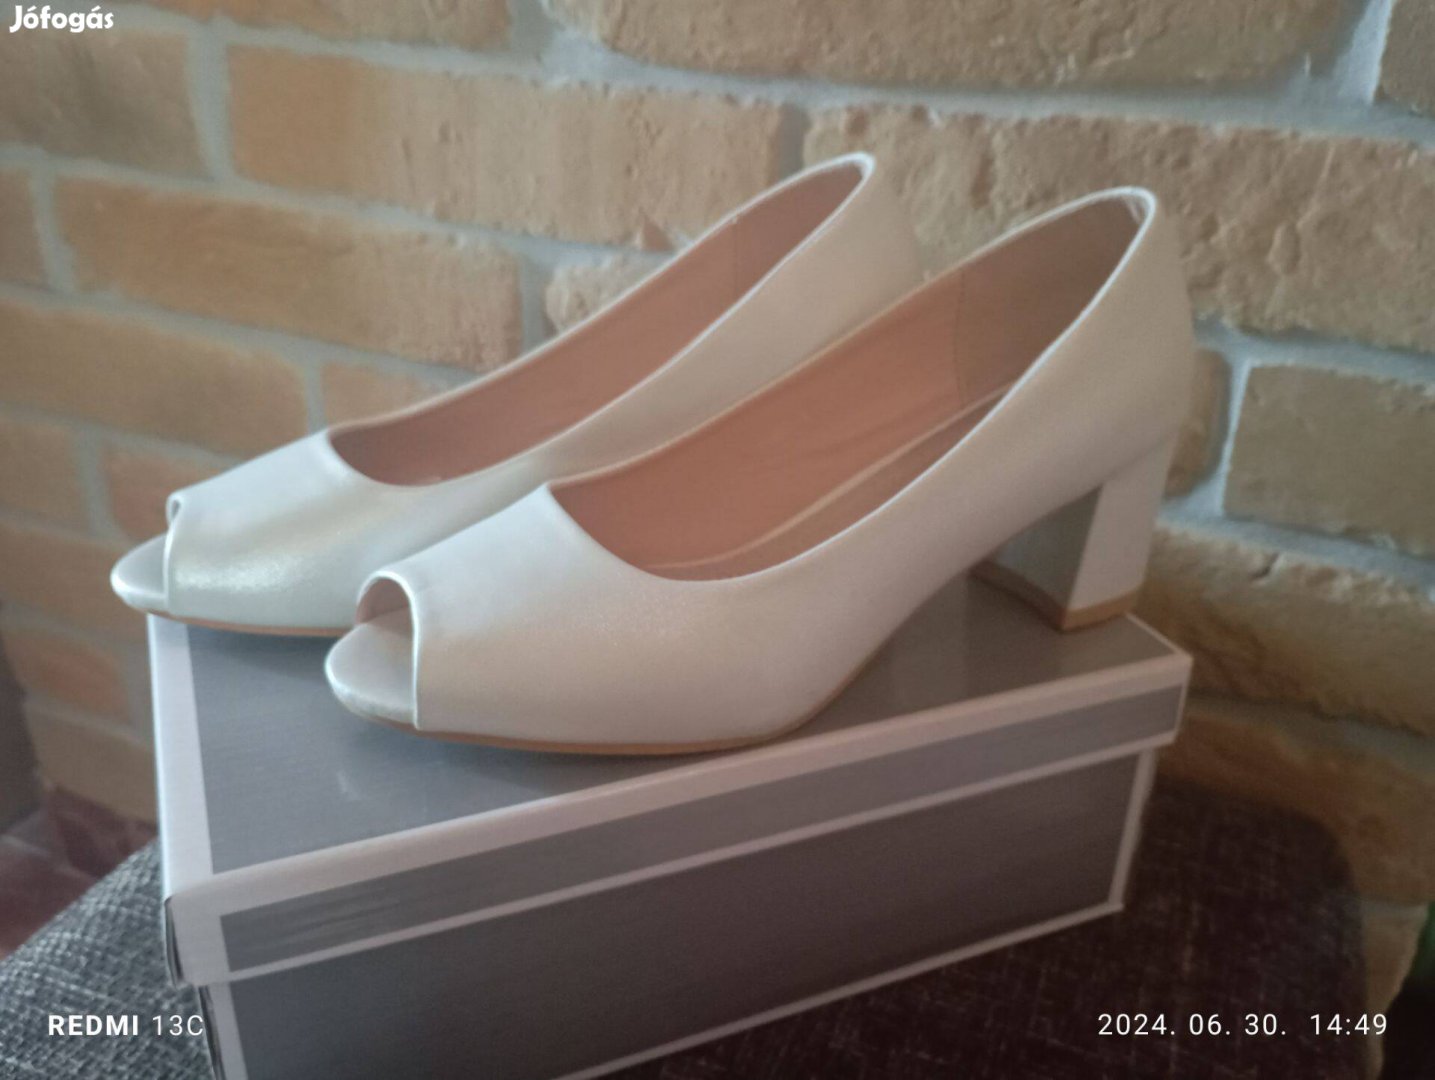 39-es egyszer használt fehér női cipő